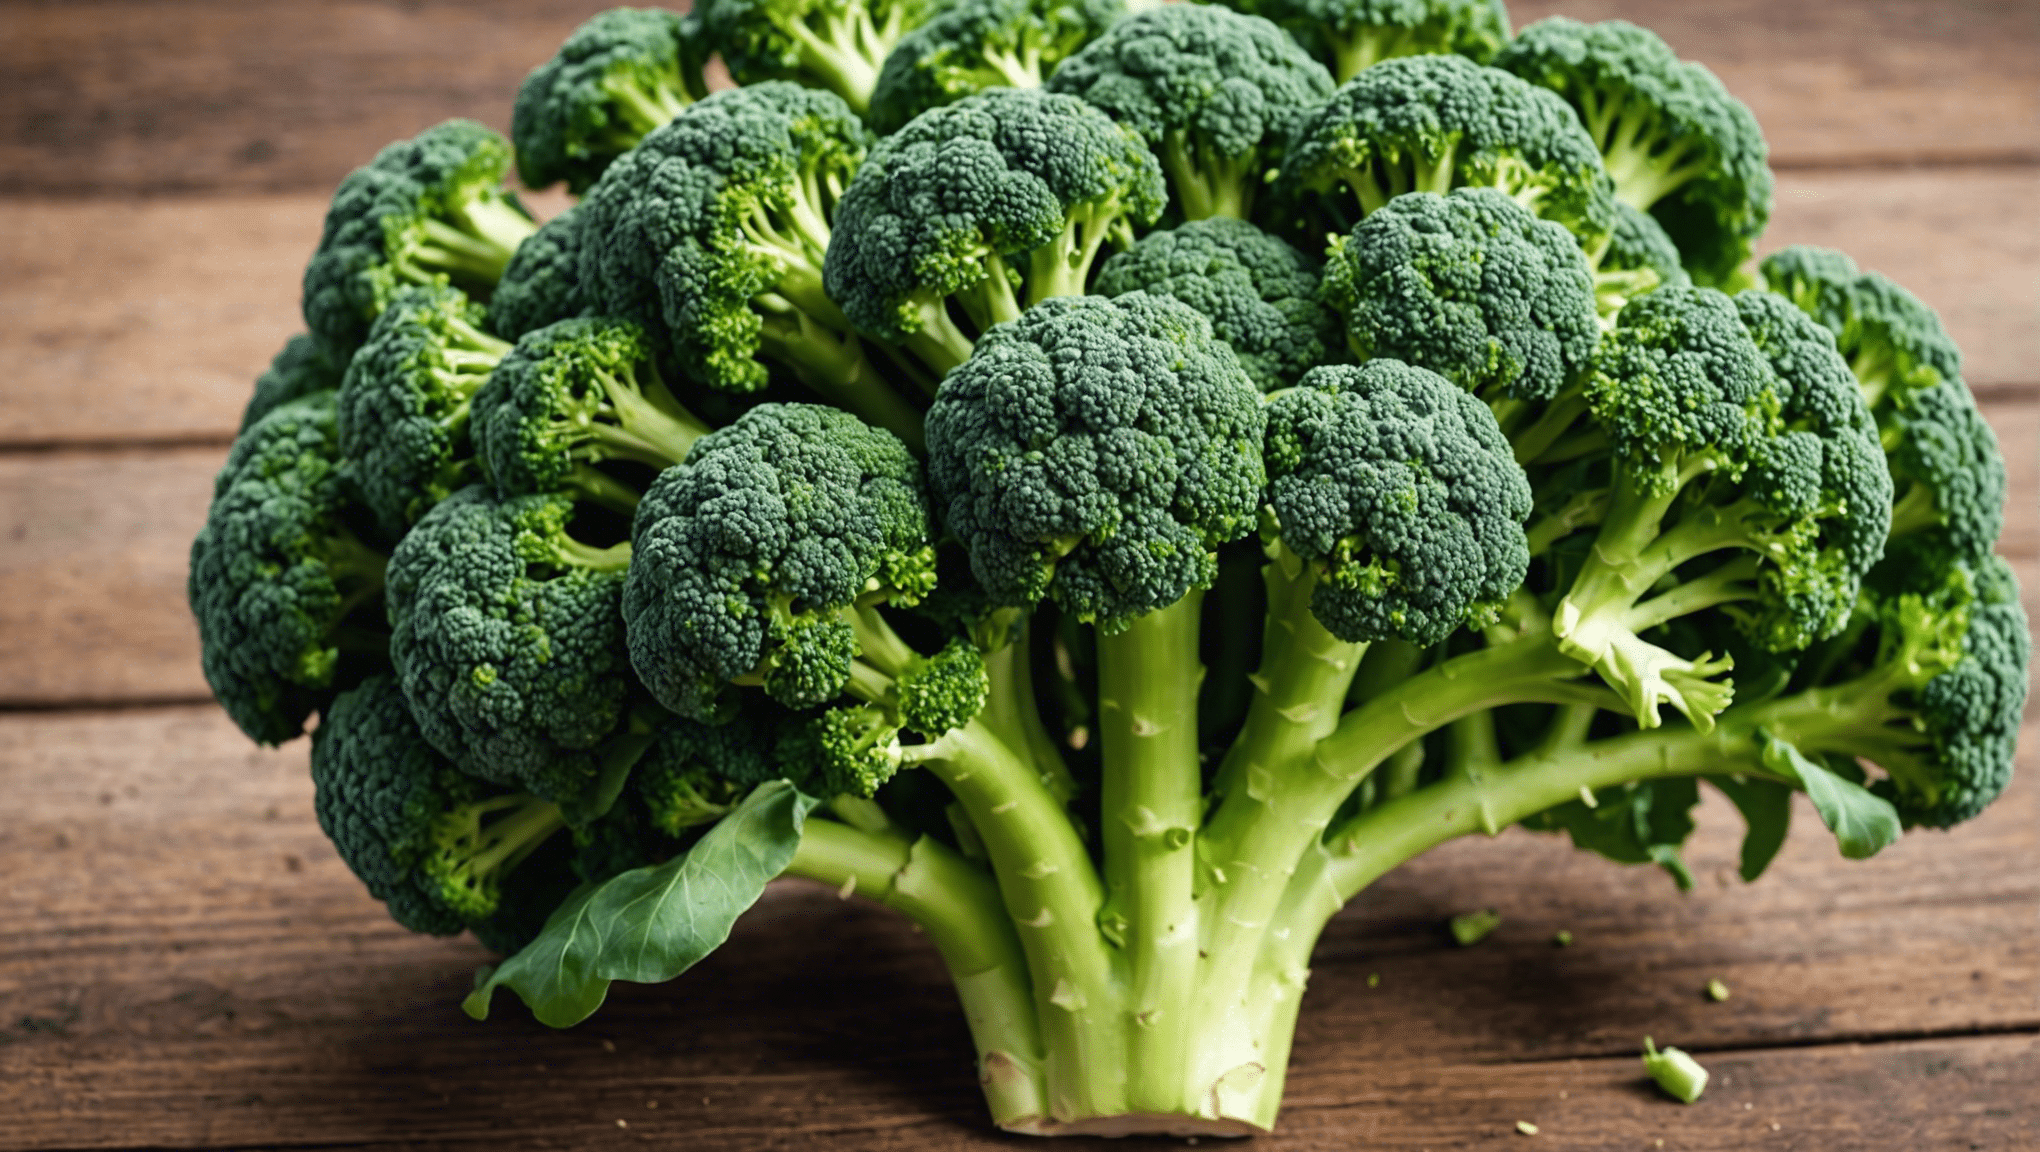 objevte důvody popularity semen brokolice ve zdravotních trendech a jejich potenciální zdravotní přínosy.